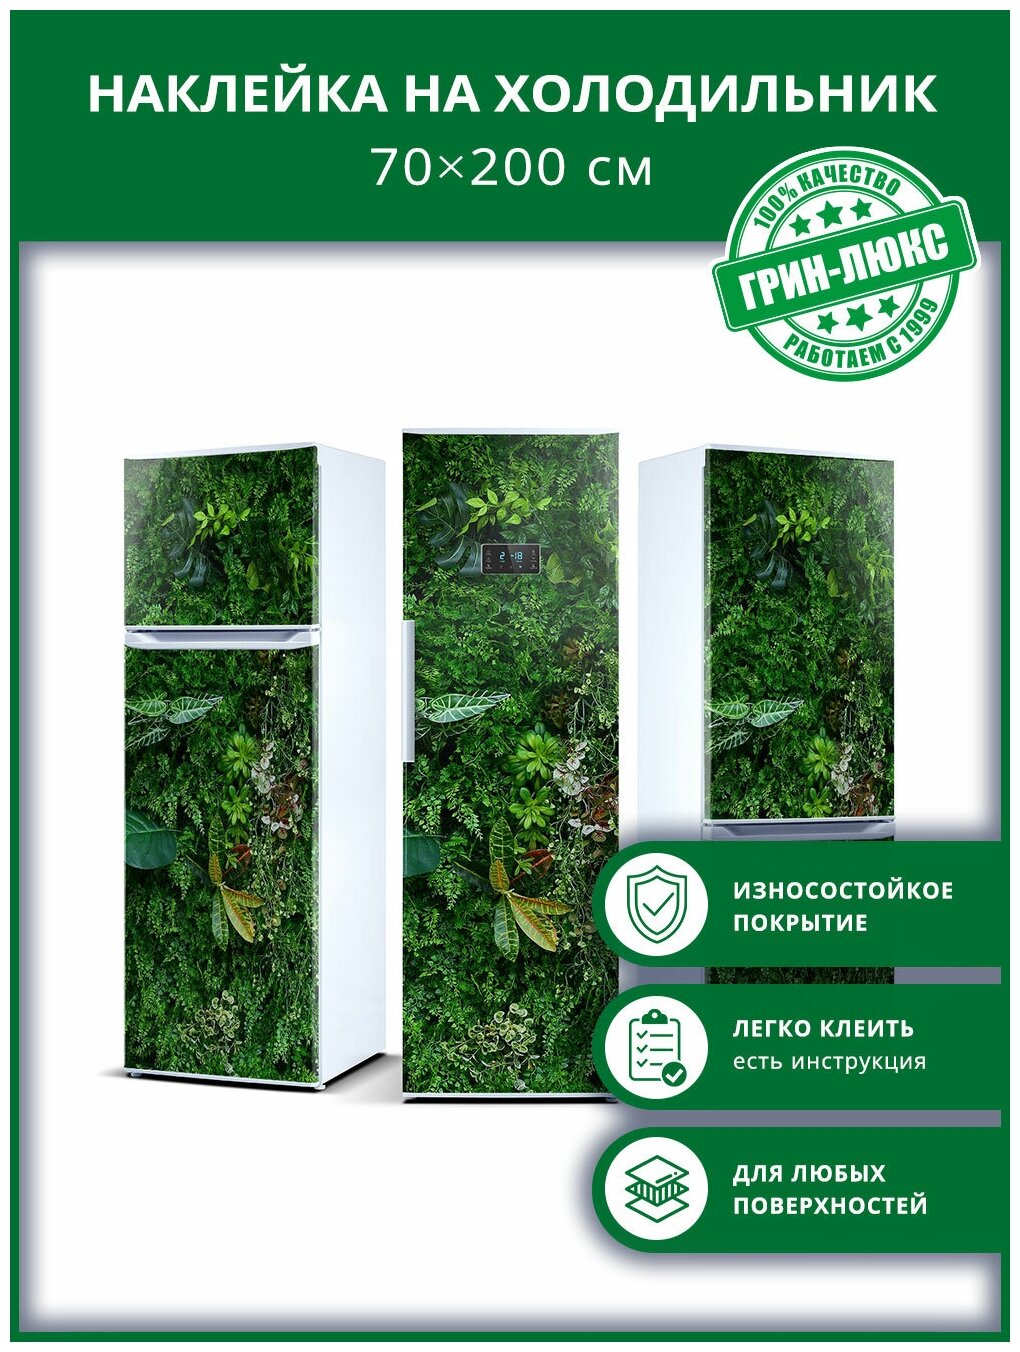 Наклейка с защитным покрытием на холодильник "Растительная стена 70х200"